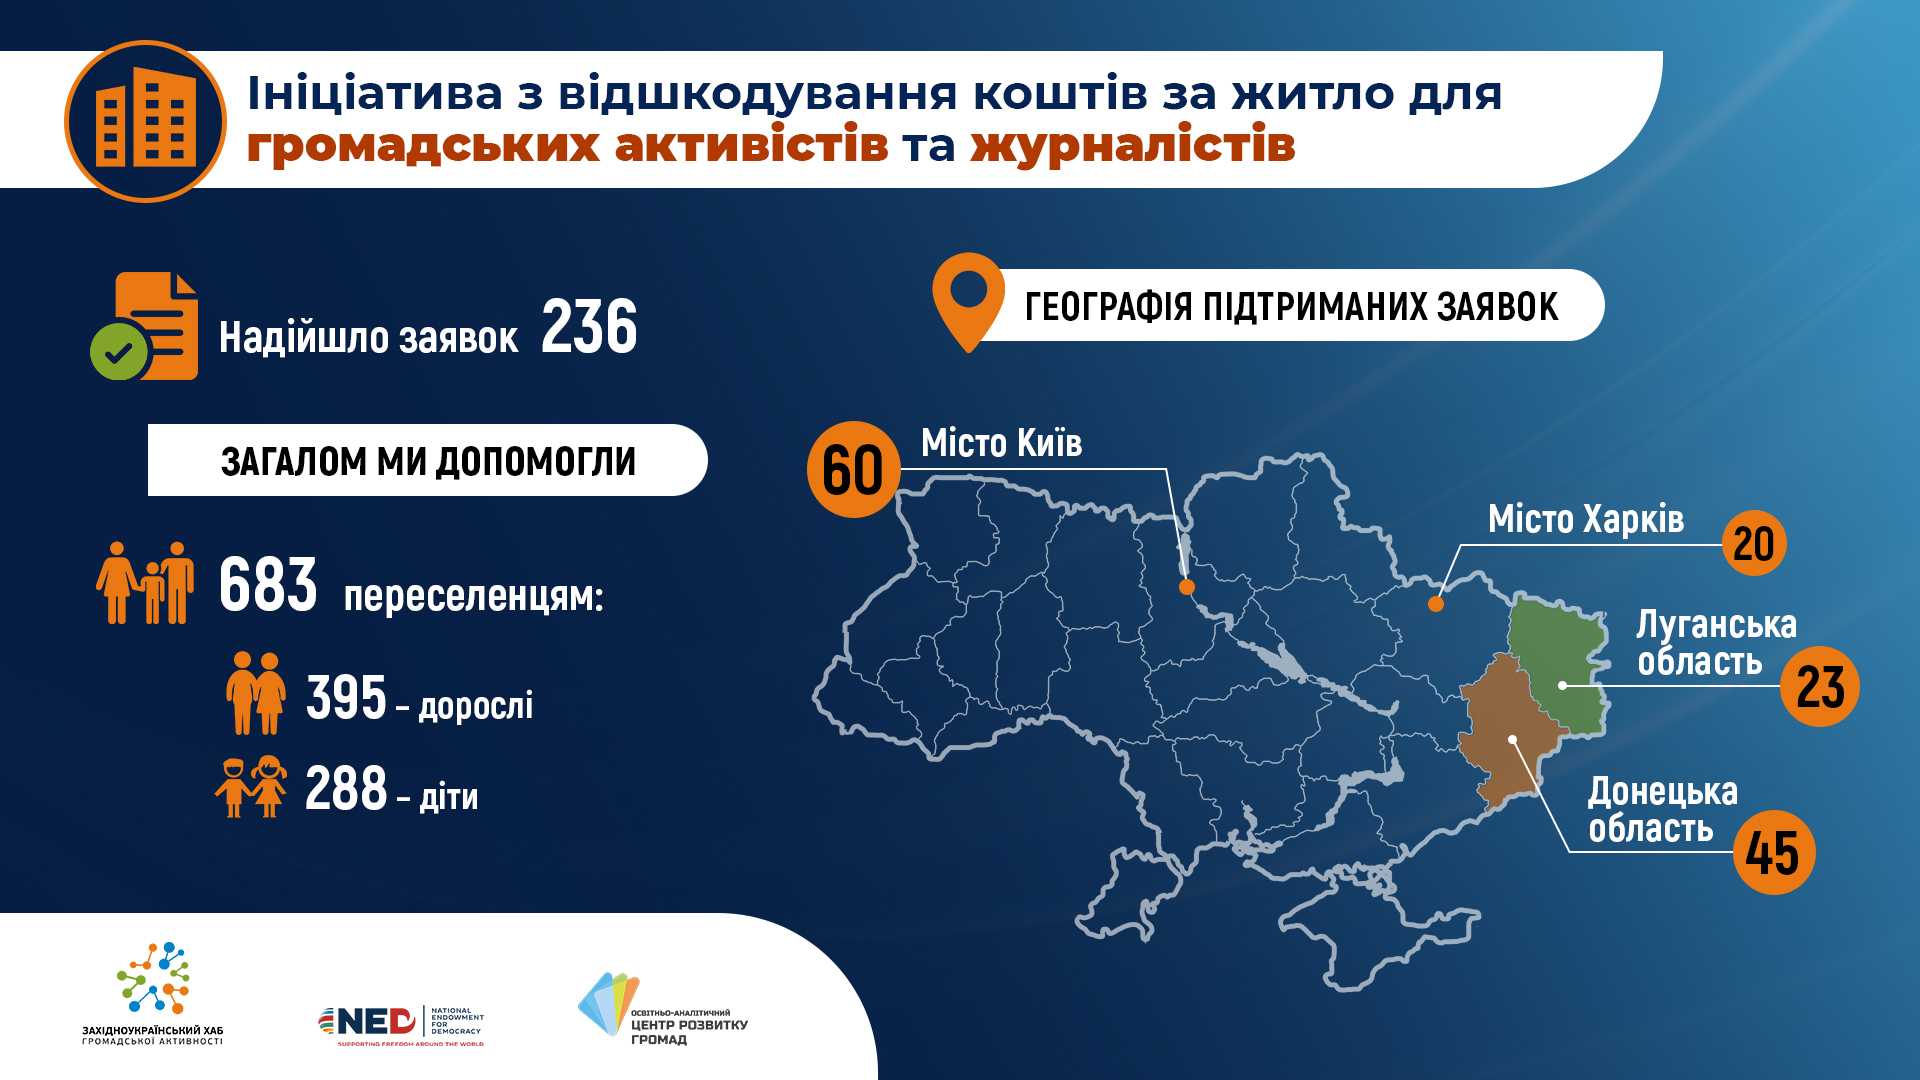 initiative zagal ukr - Громадська організація з Тернополя компенсувала кошти за житло для близько 700-та переселенців